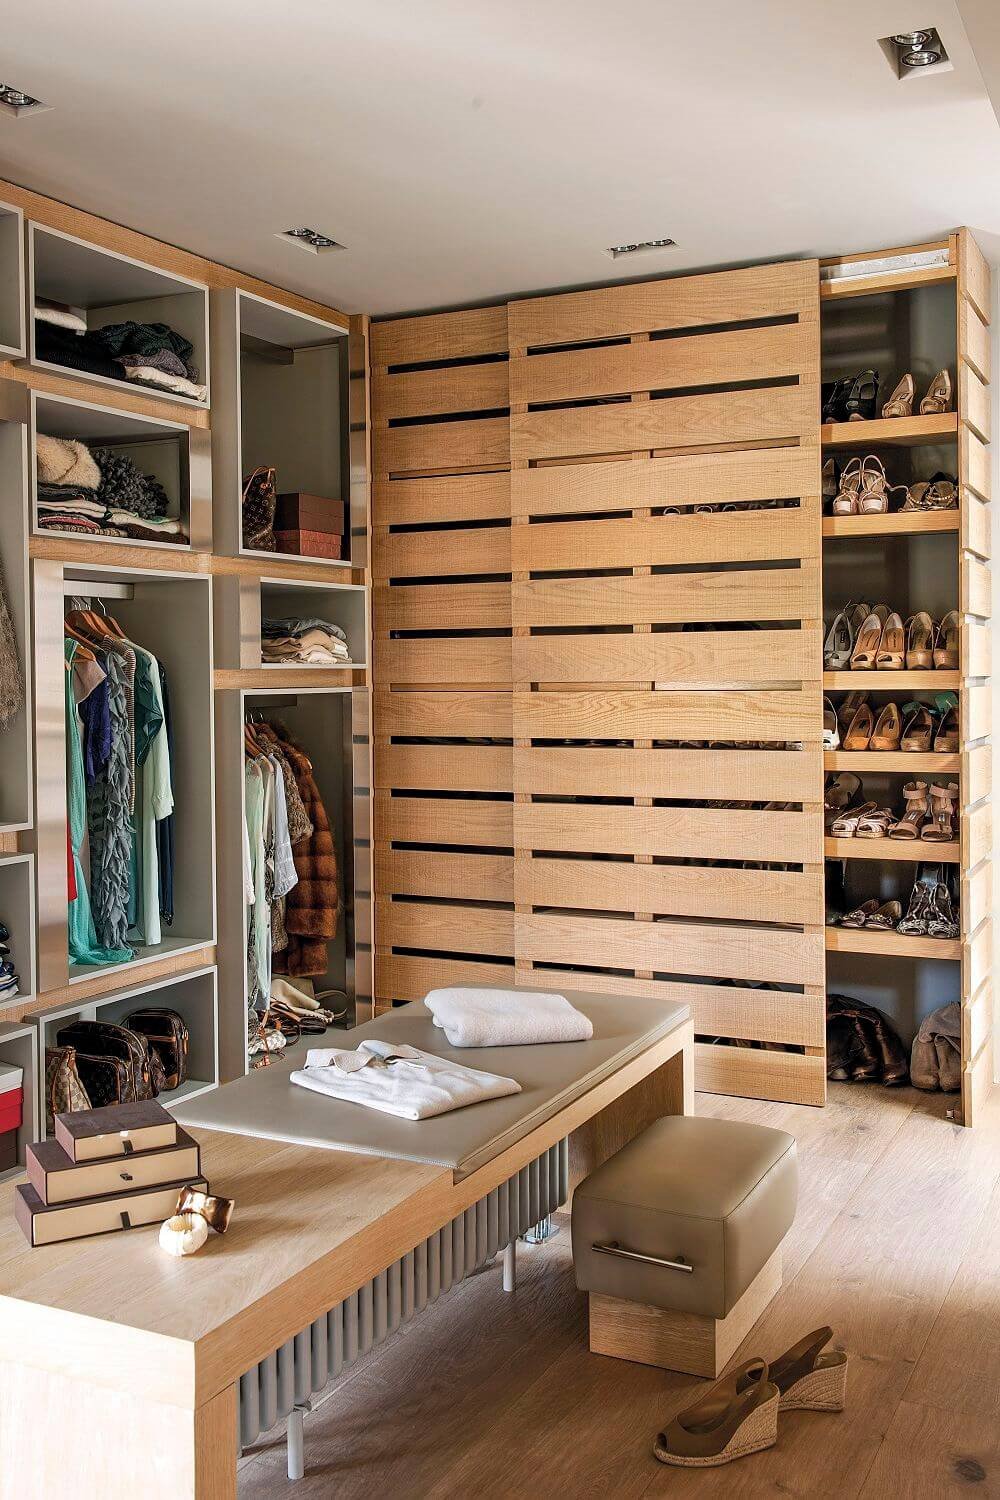 Cómo organizar tu armario o crear tu propio vestidor sin gastar